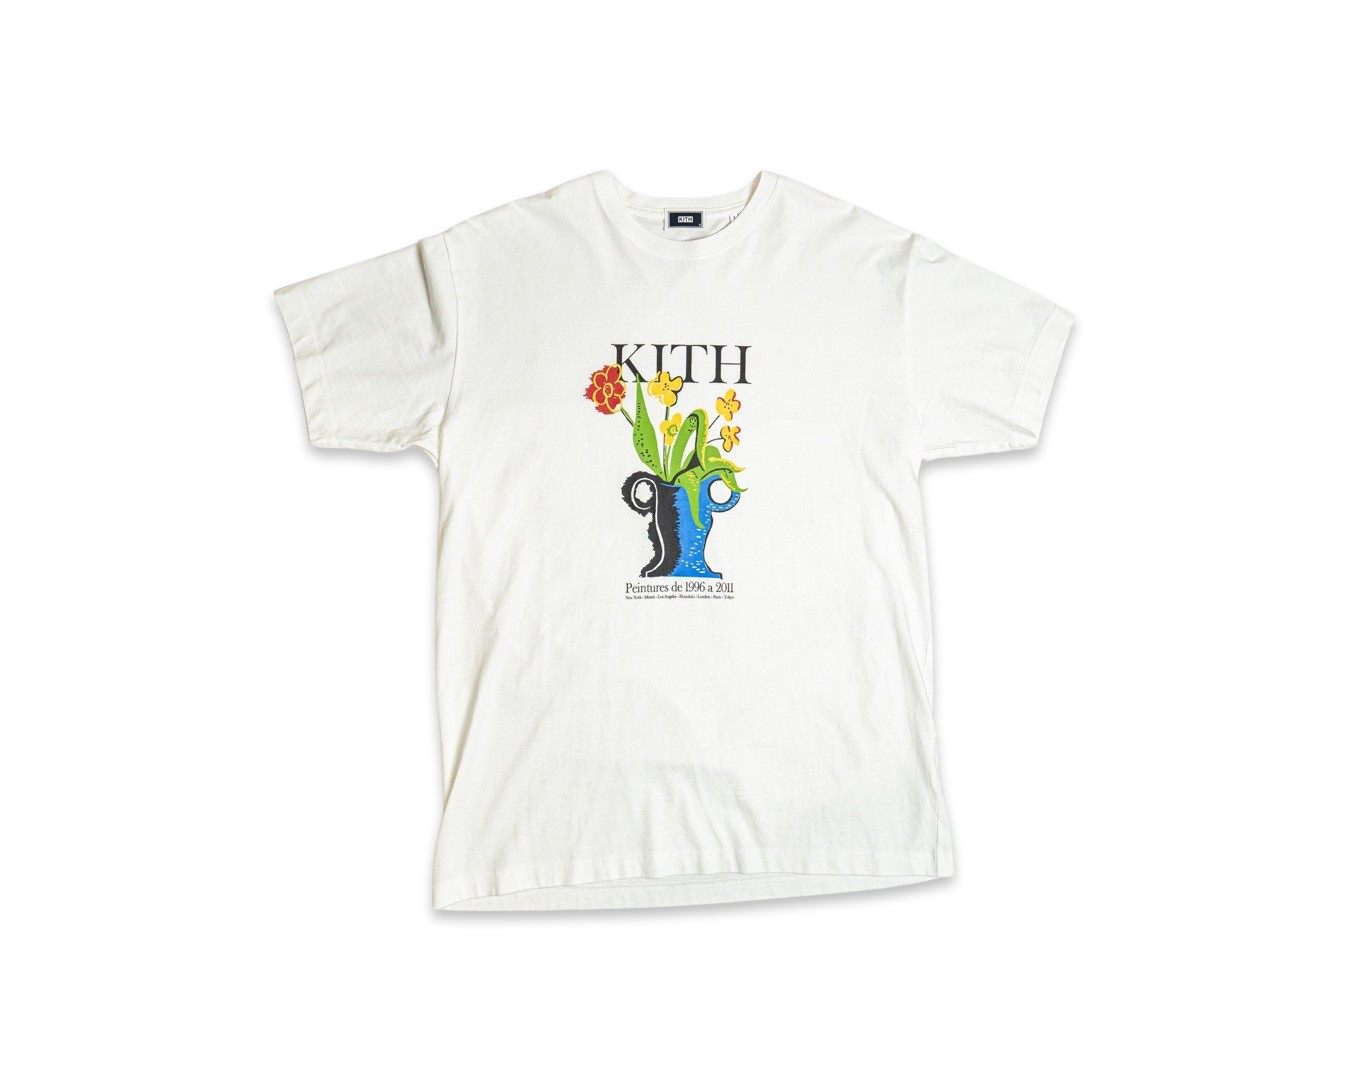 Kith Peintures de 1996 a 2011 T-Shirt White